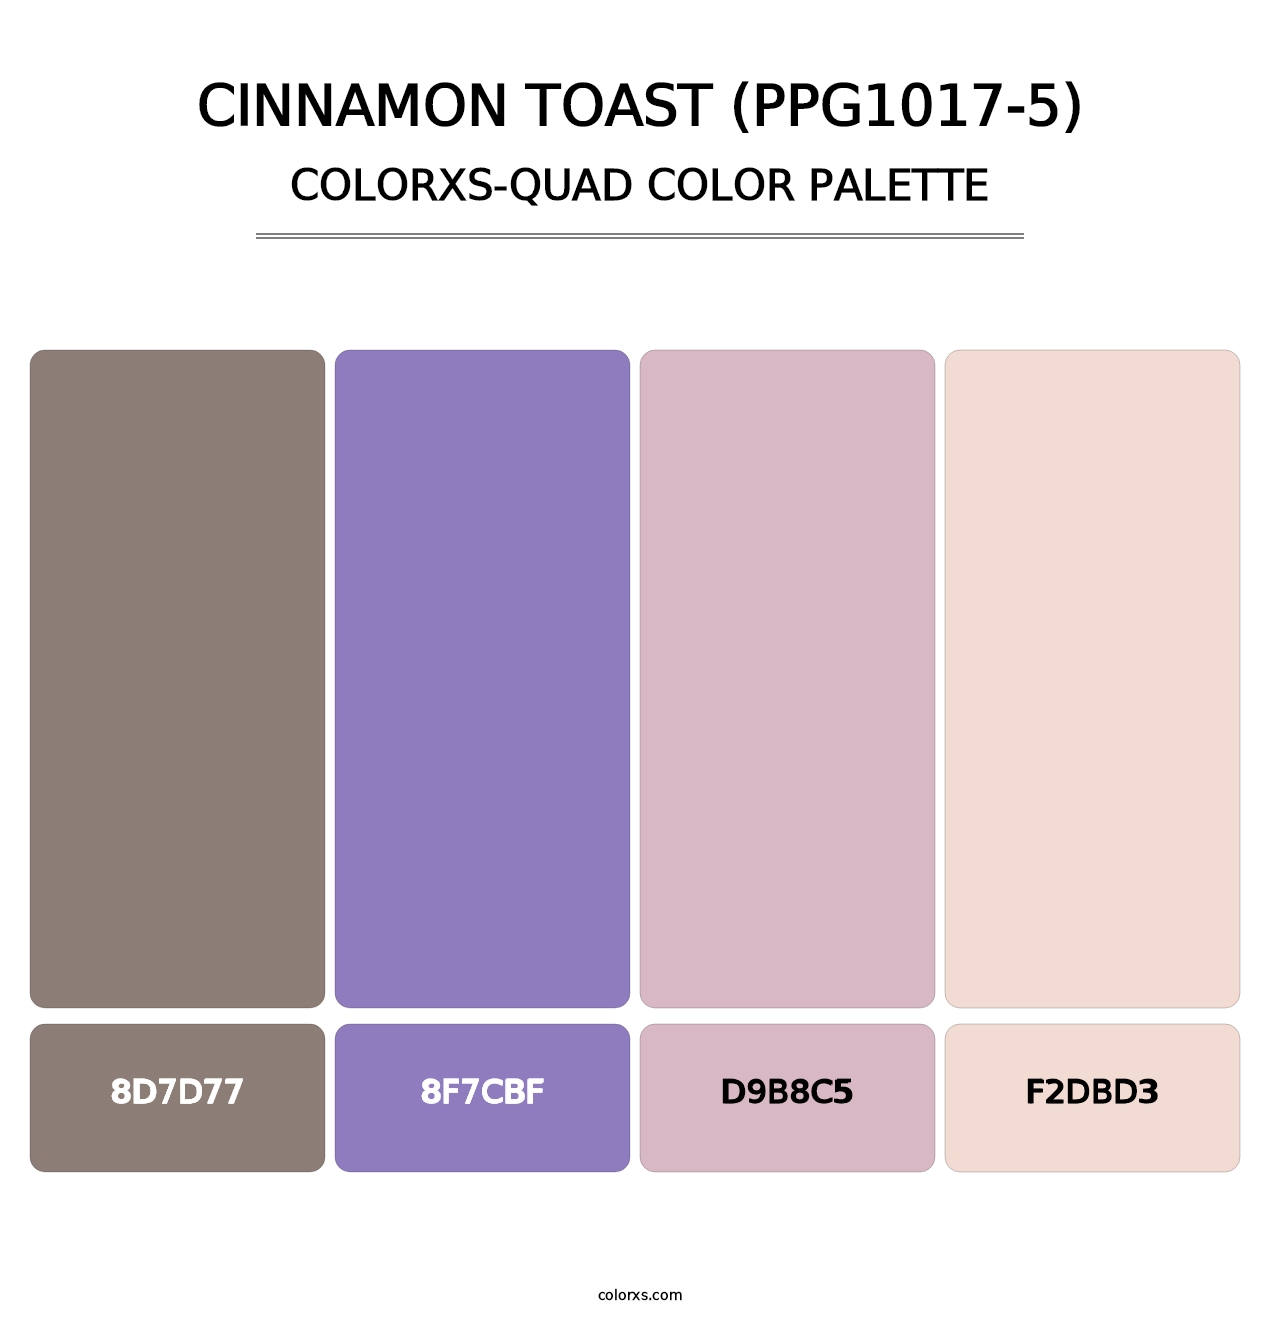 Cinnamon Toast (PPG1017-5) - Colorxs Quad Palette